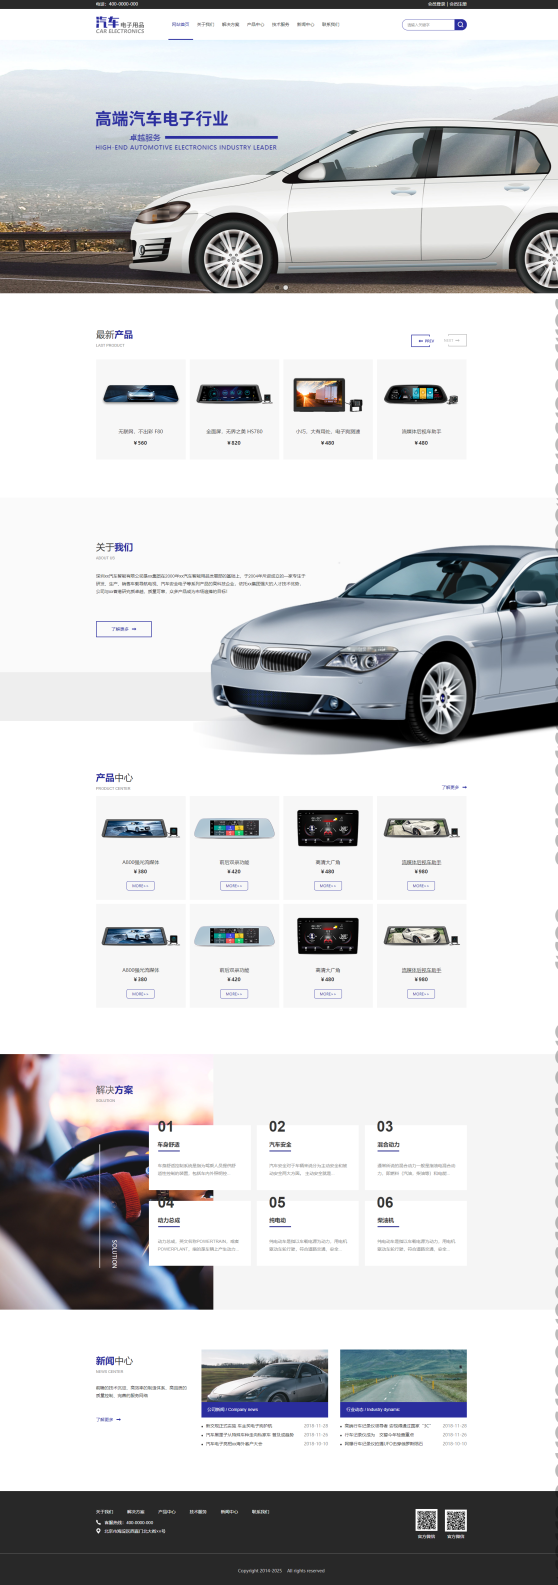 优选汽车电子企业网站模板